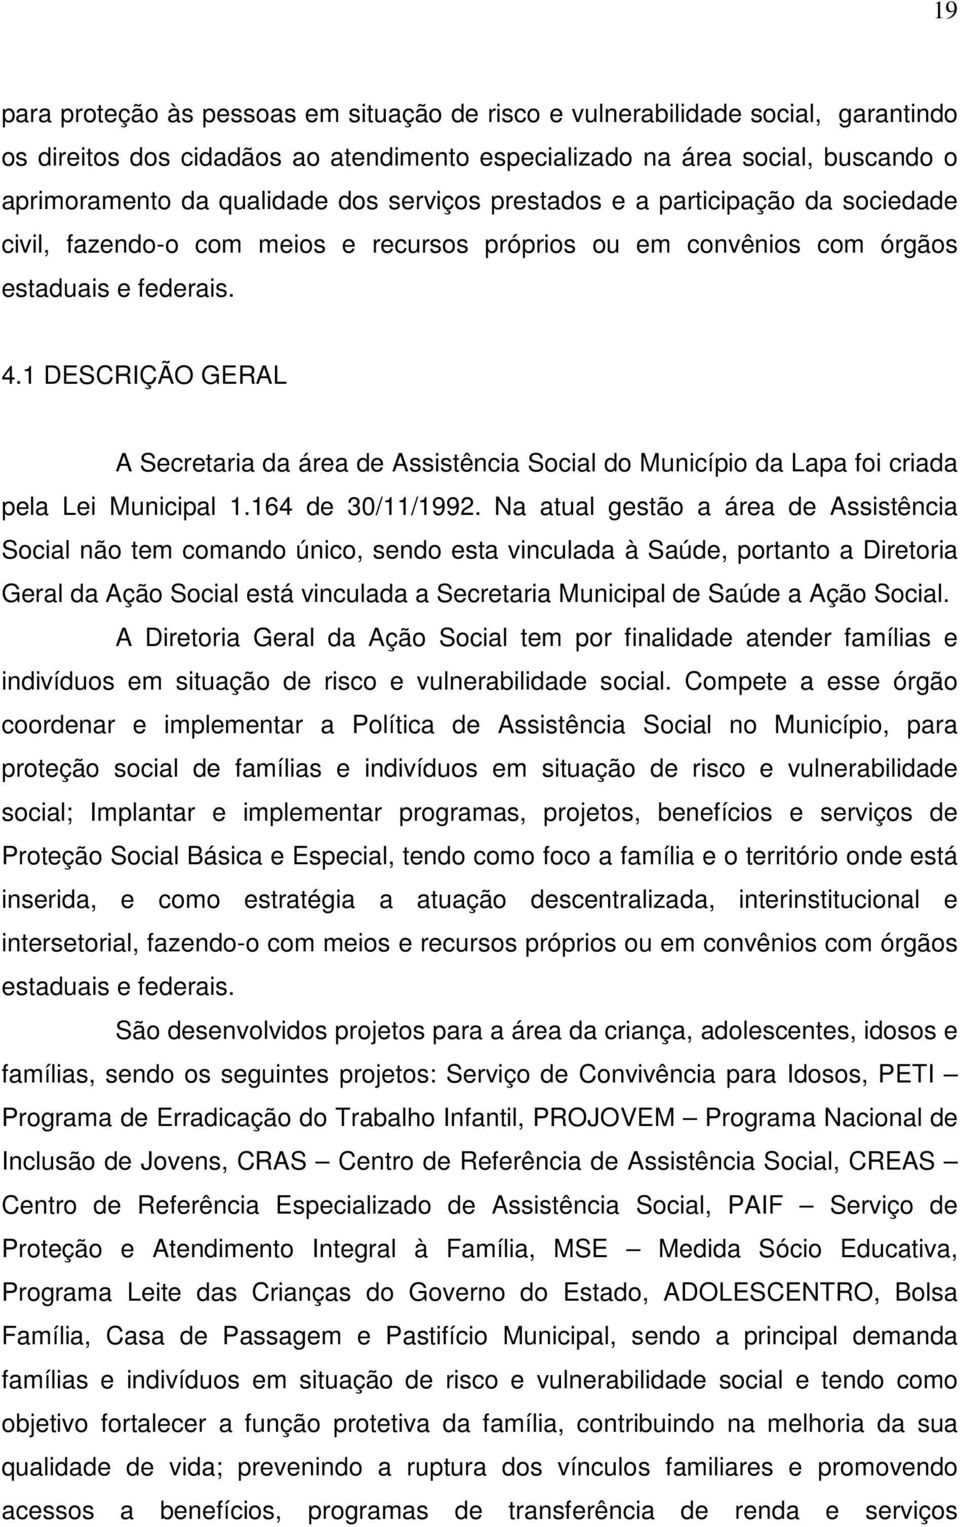 1 DESCRIÇÃO GERAL A Secretaria da área de Assistência Social do Município da Lapa foi criada pela Lei Municipal 1.164 de 30/11/1992.